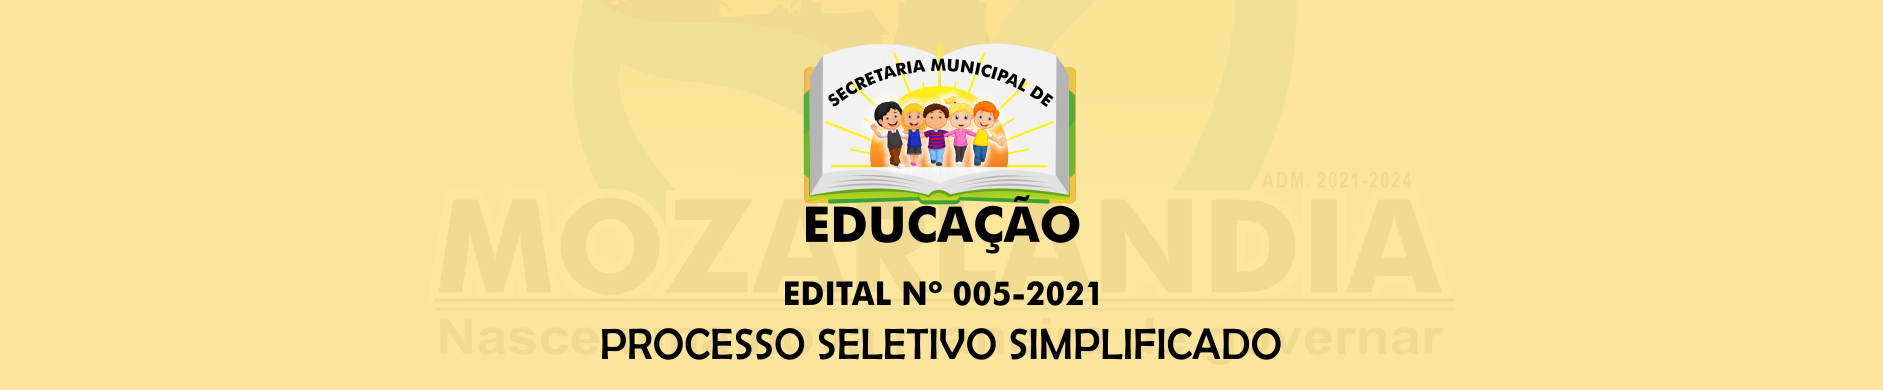 PROCESSO SELETIVO SIMPLIFICADO – EDITAL Nº 005-2021